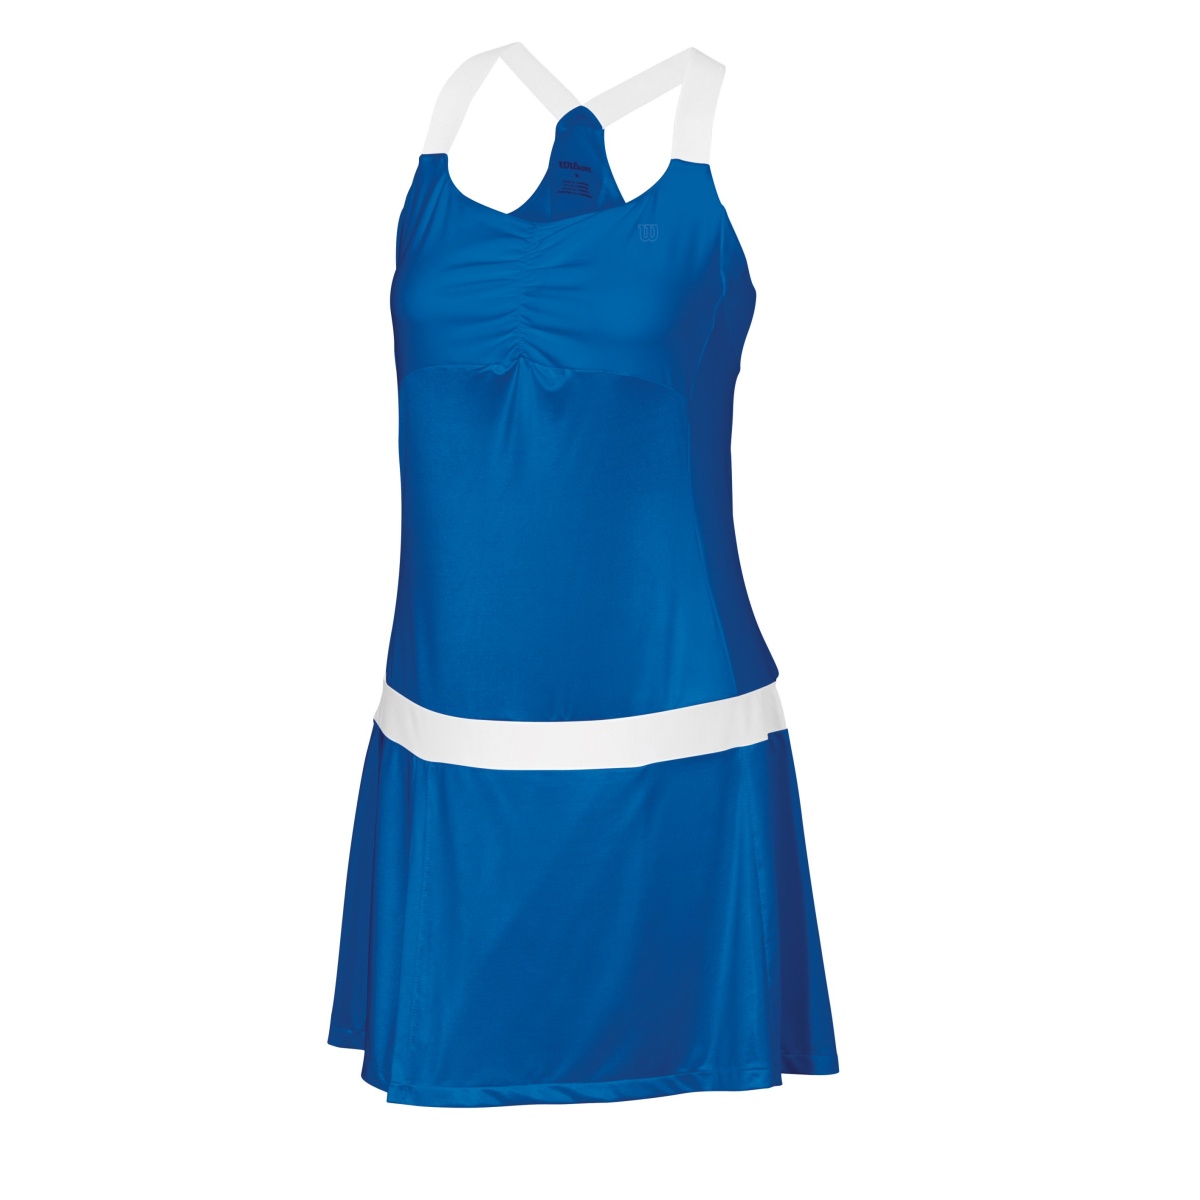 Wilson Kleid Performance Tea Lawn Blau Damen Grosse M Xl Versandkostenfrei Online Bestellen